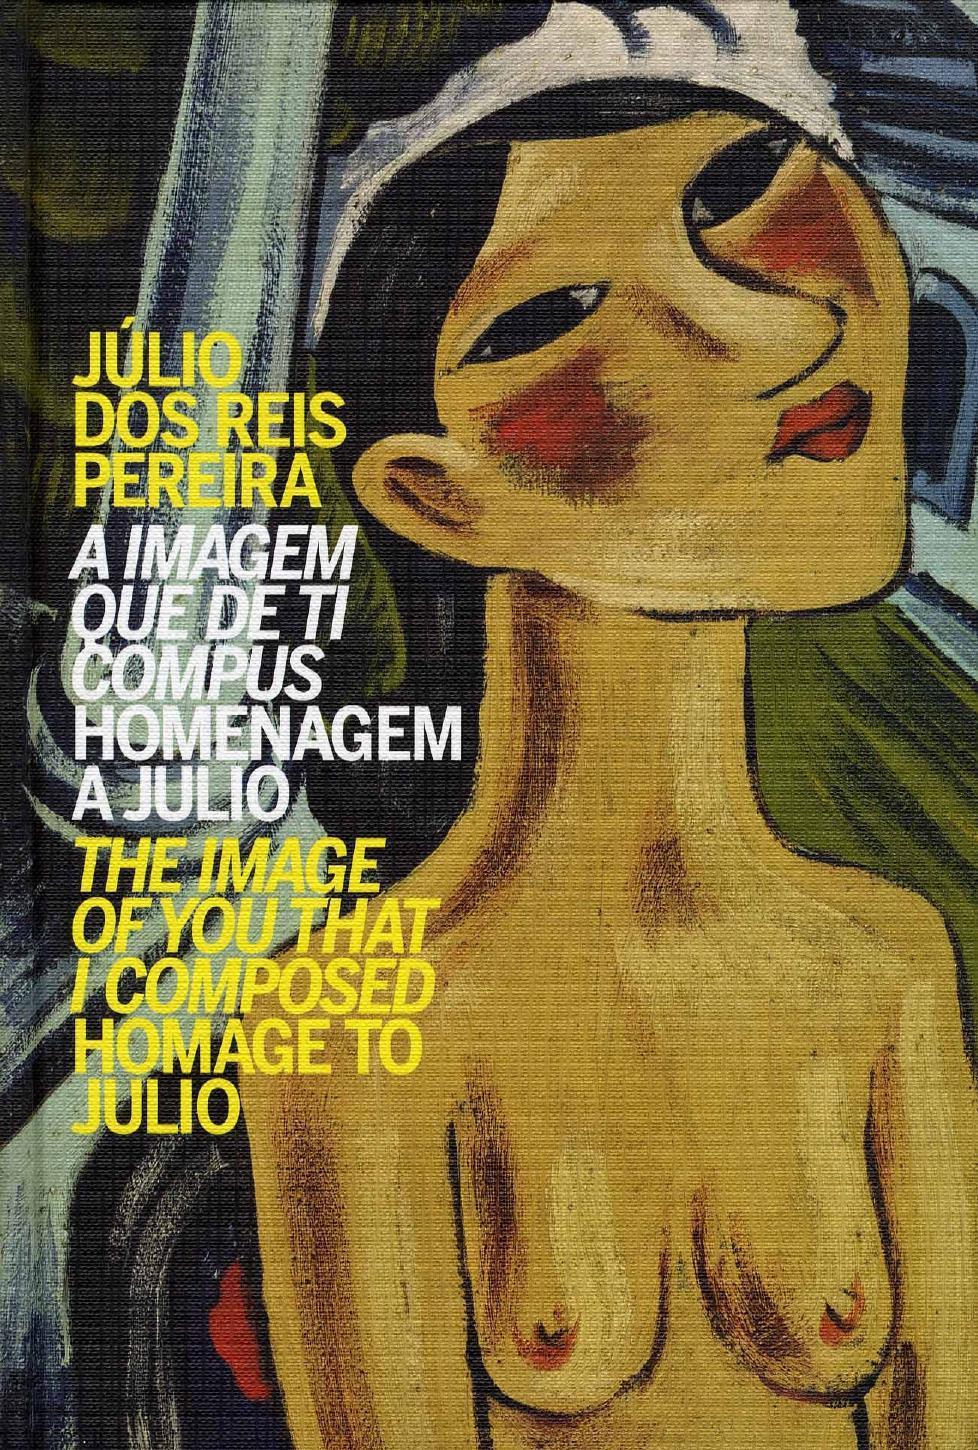 Júlio dos Reis Pereira. A imagem que de ti compus. Homenagem a Julio / The image of you that I composed. Homage to Julio